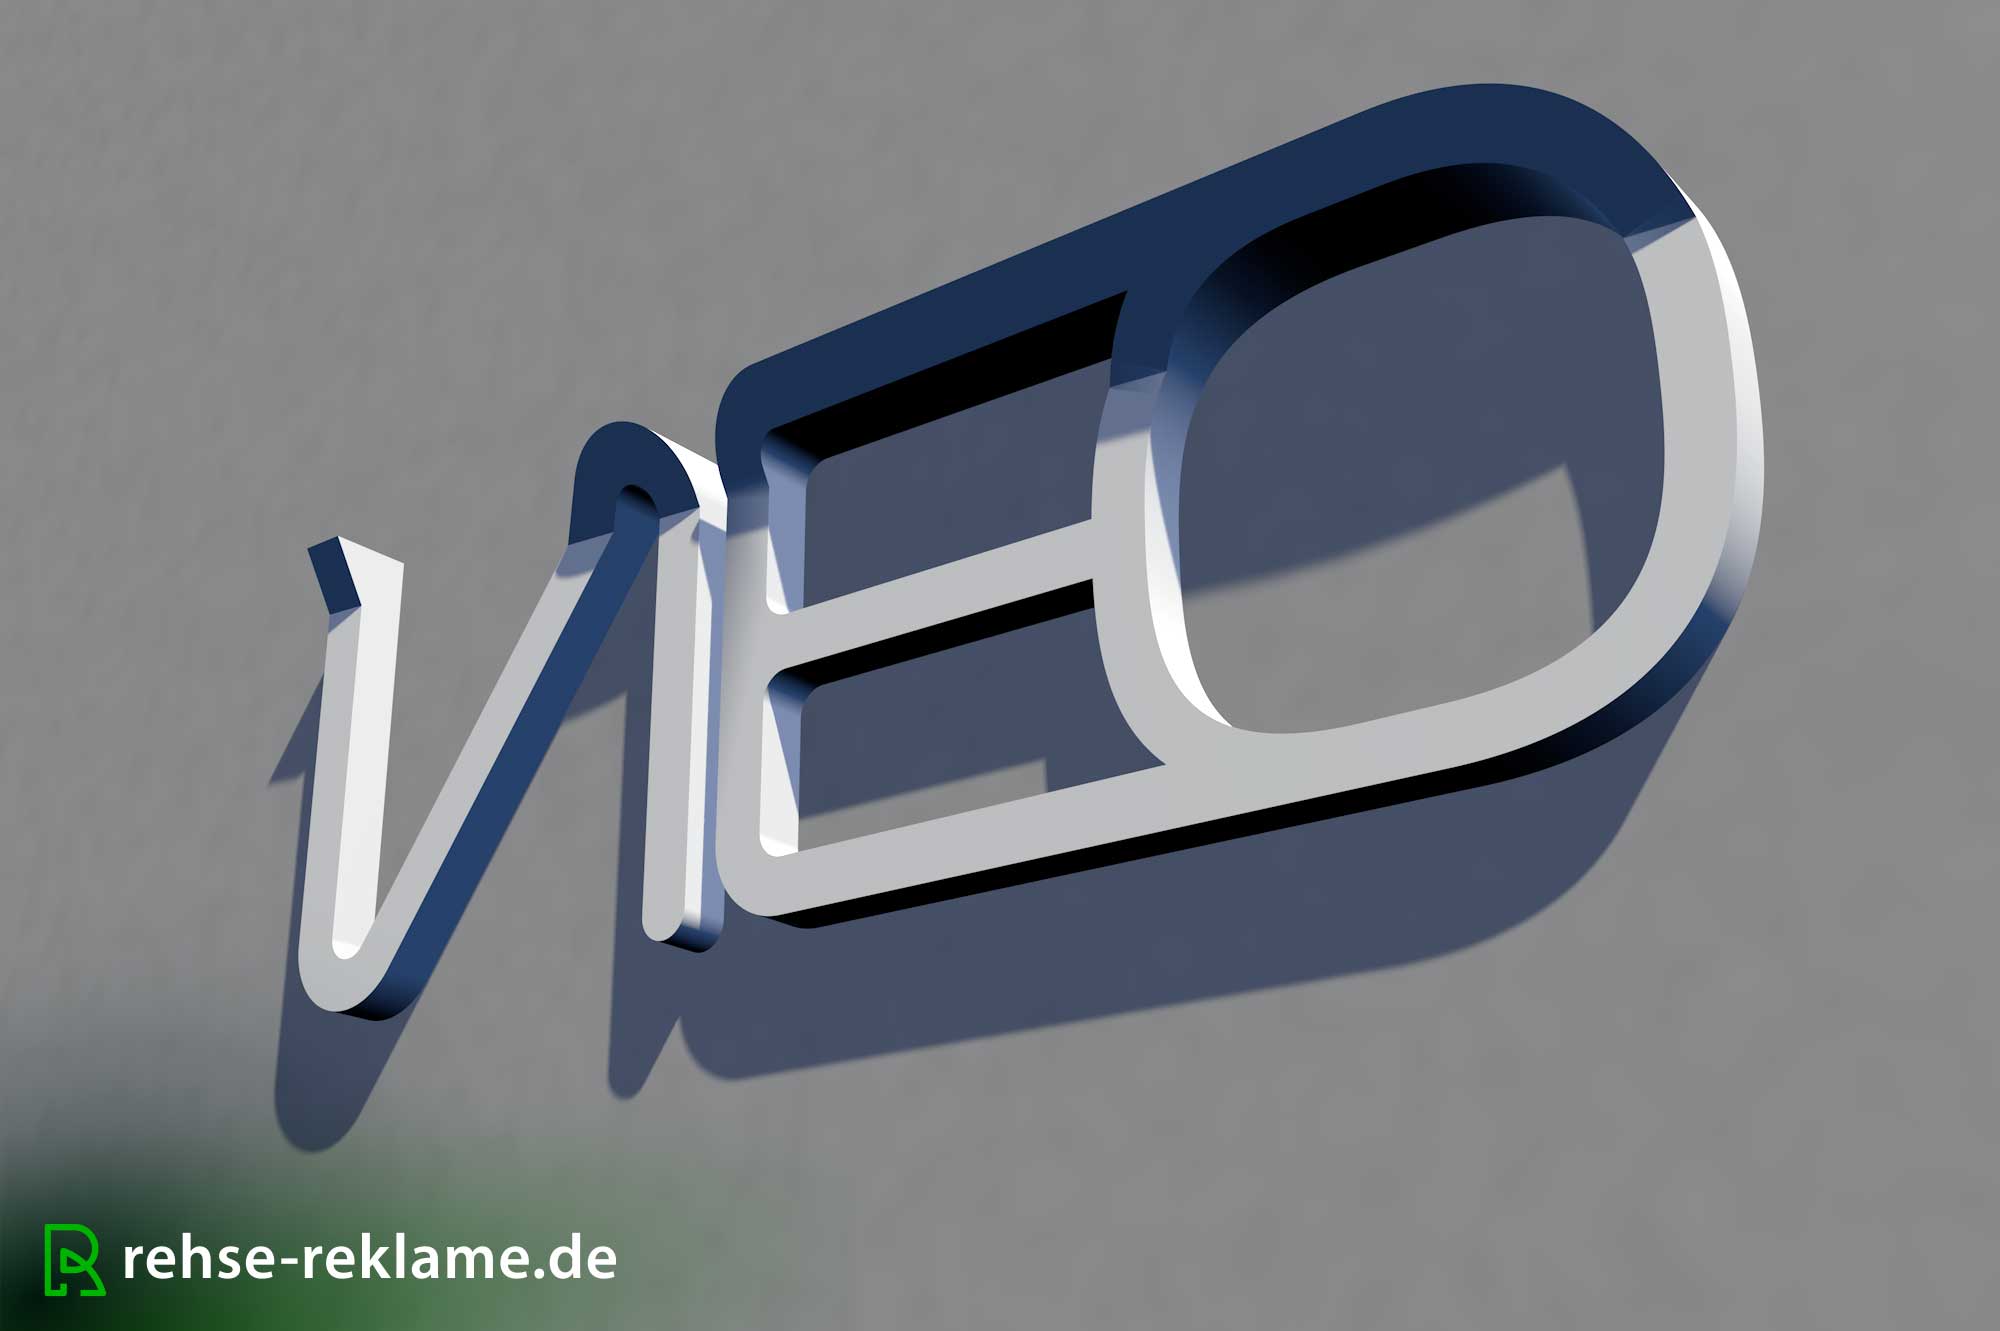 2 Meter Logo im 3D Druck produziert